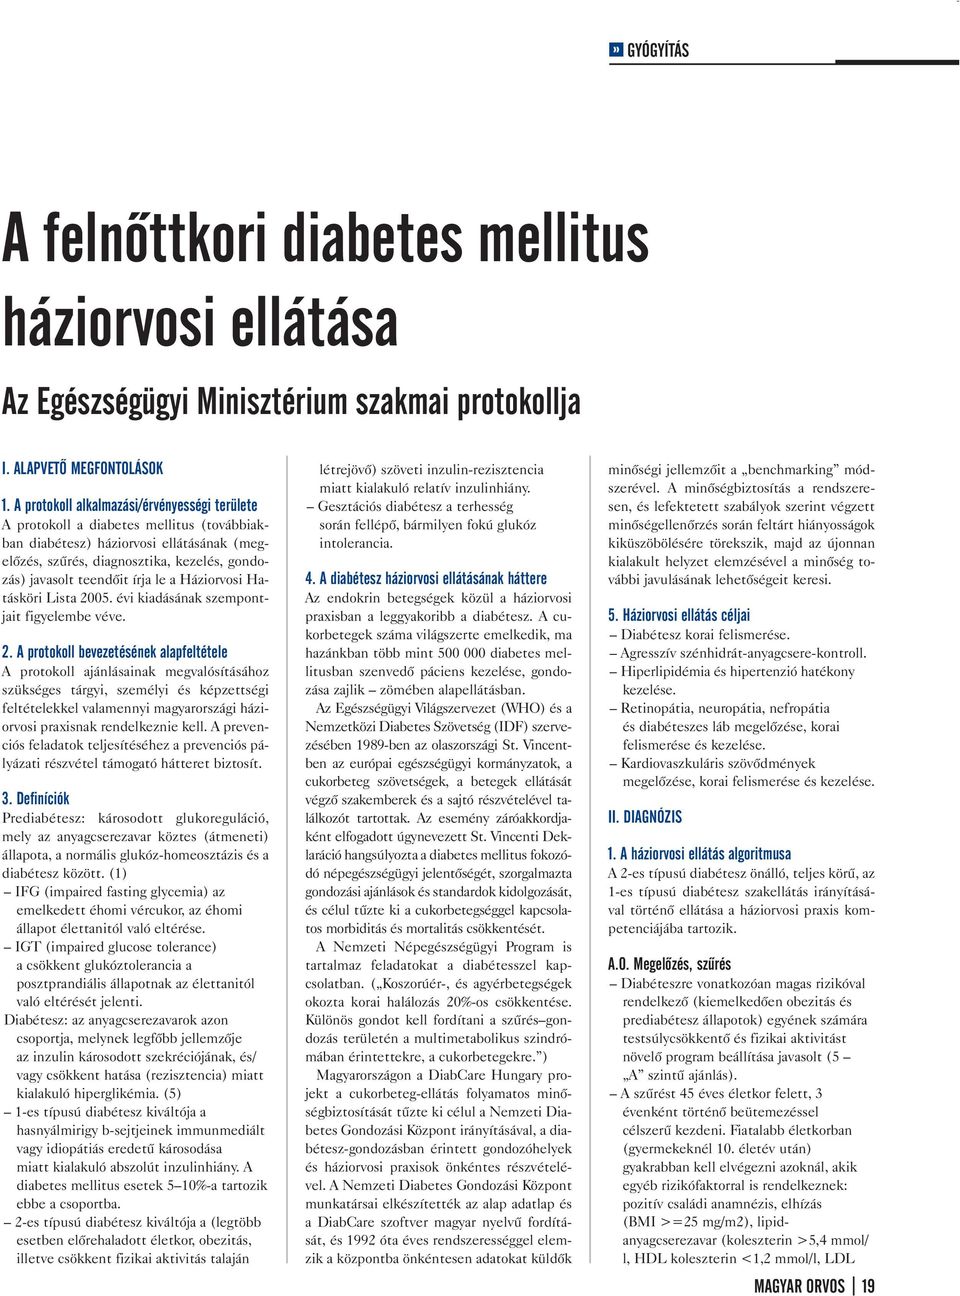 diabetes mellitus kezelése 1 írja be az új kezelést